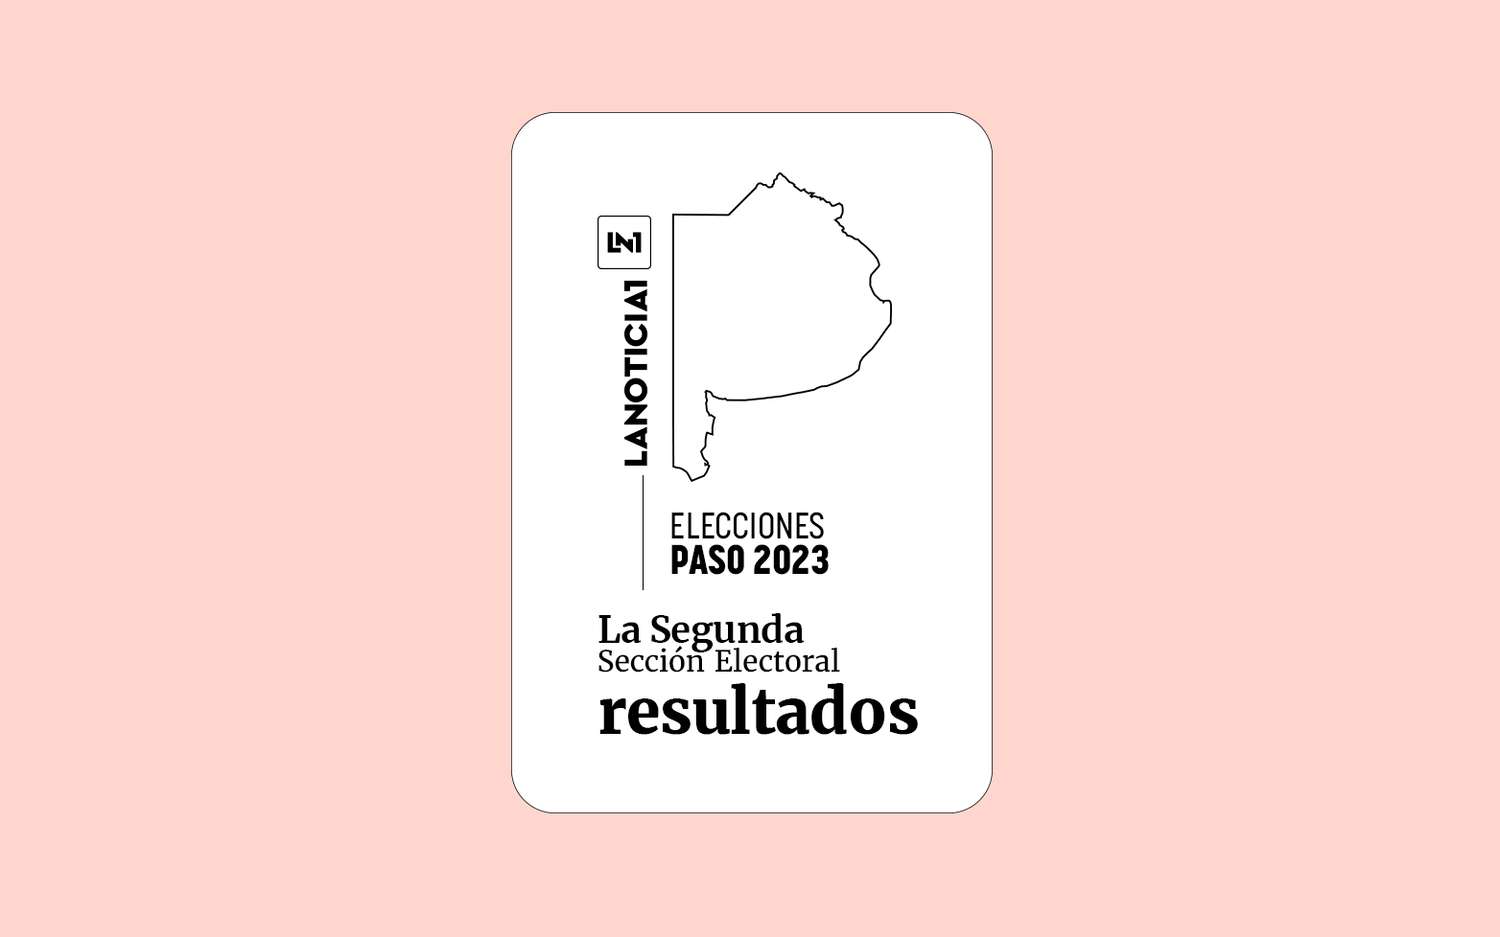 Elecciones PASO 2023: Resultados oficiales en la Segunda Sección Electoral